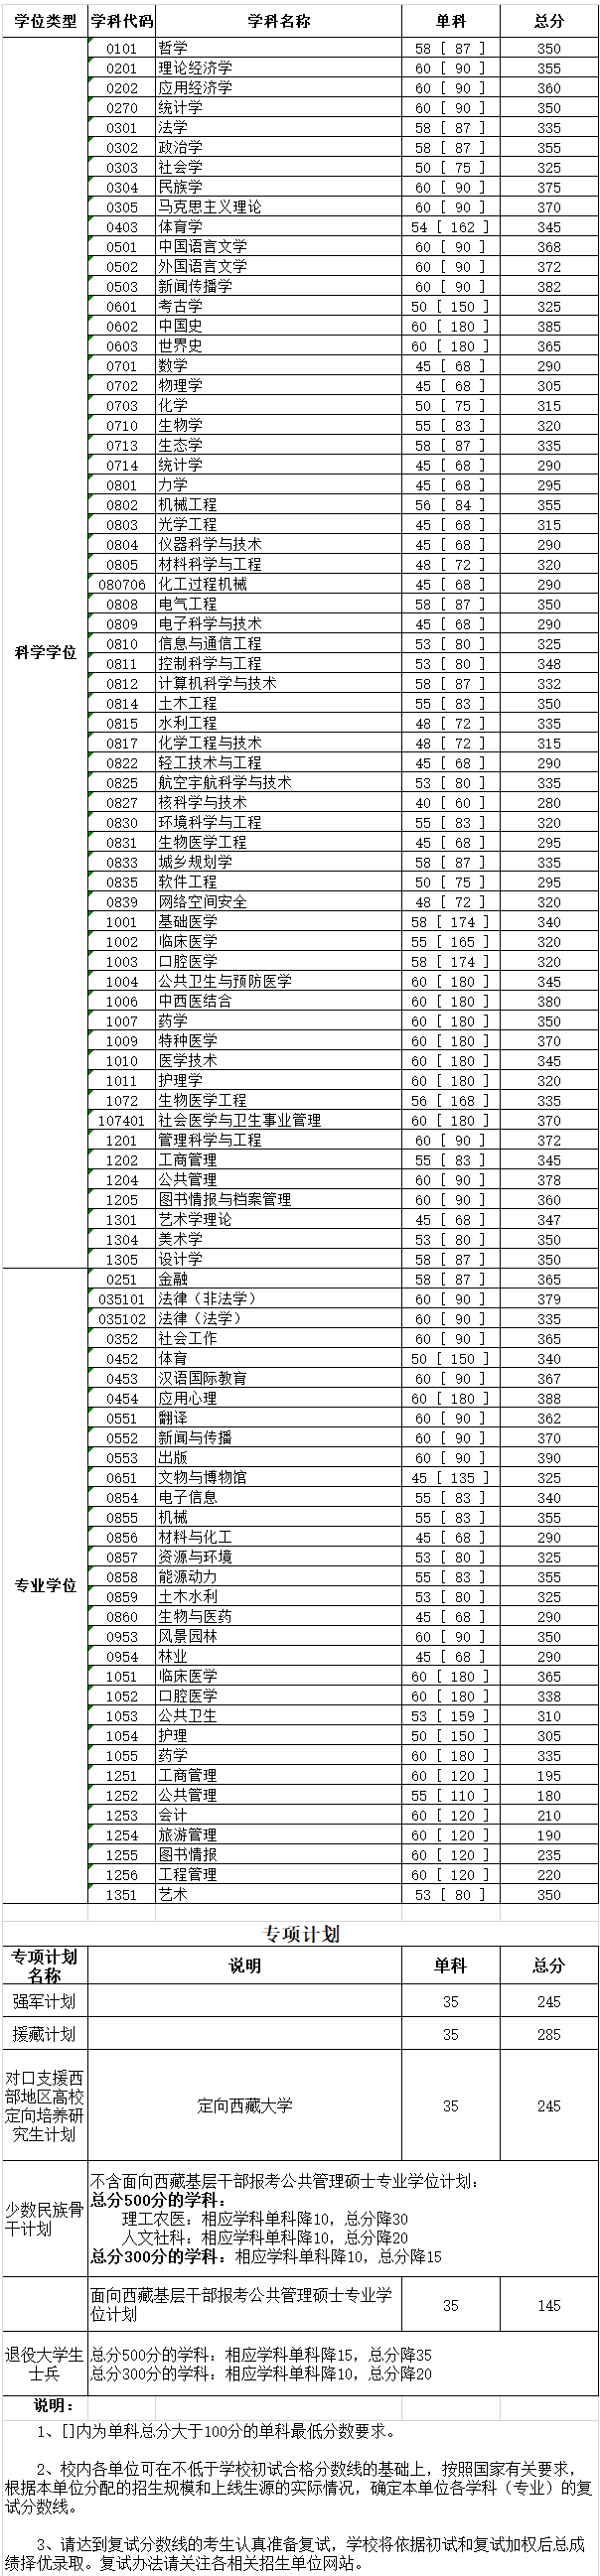 四川大学2020年硕士研究生考试复试分数线